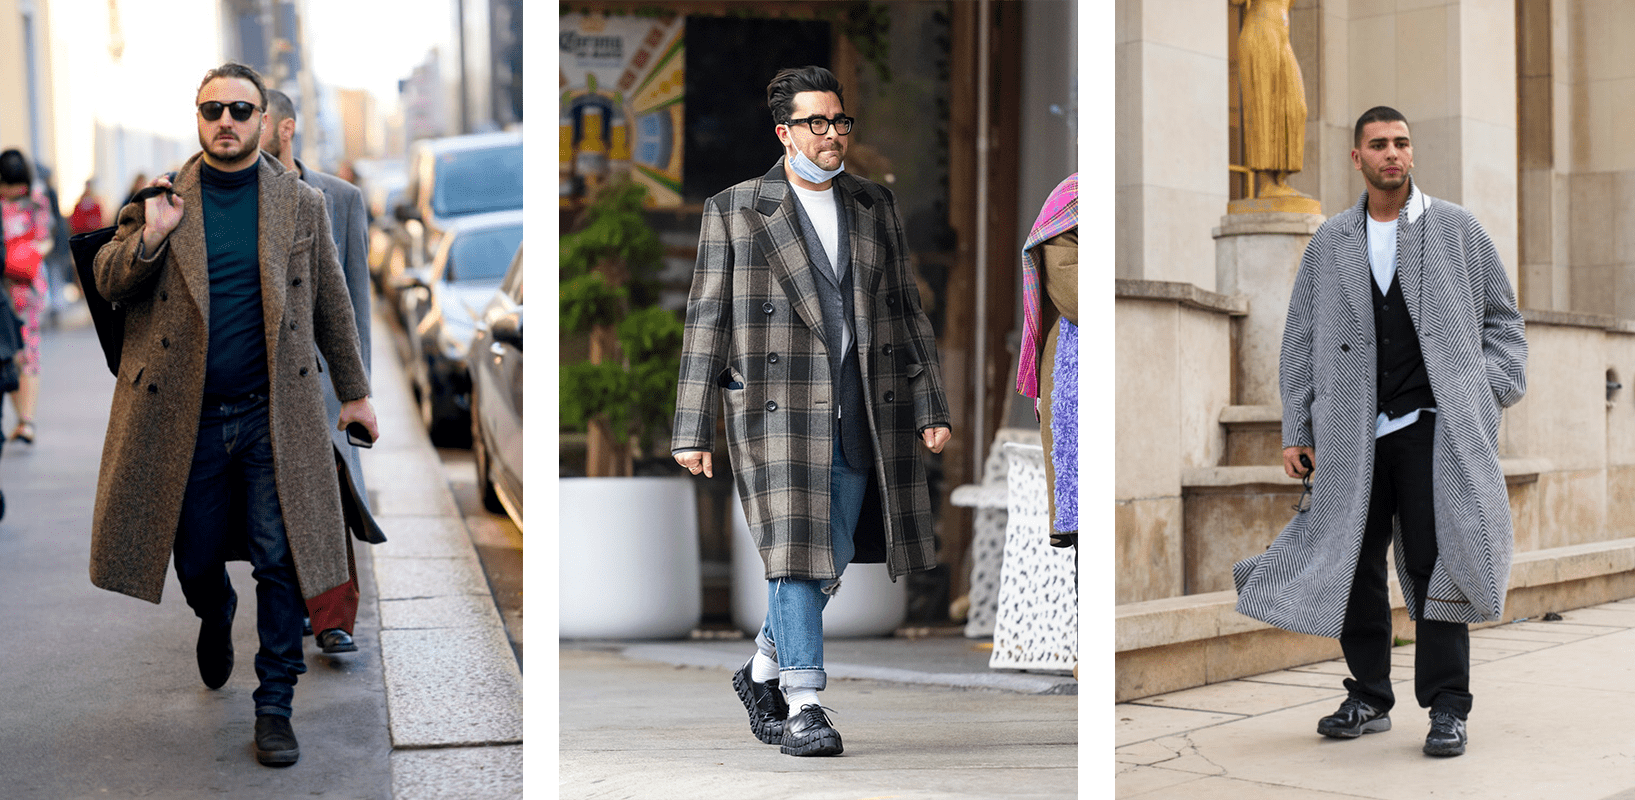 Модные мужские зимние образы: как одеваться стильно в городе и на отдыхе